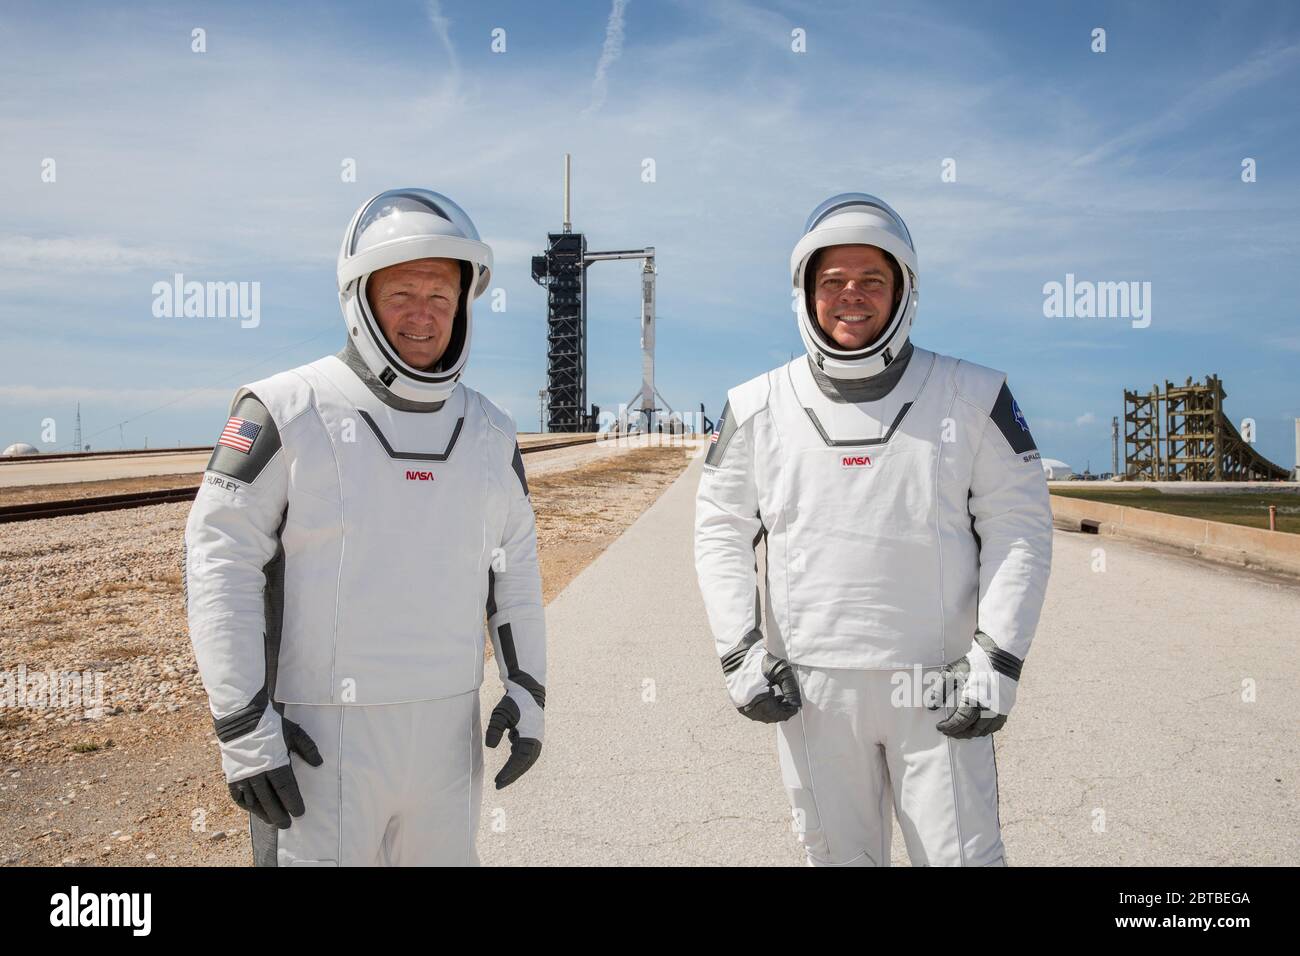 Cape Canaveral, Vereinigte Staaten von Amerika. 23 Mai 2020. Die NASA-Astronauten Douglas Hurley, links, und Robert Behnken, die SpaceX-Raumanzüge tragen, stehen vor dem Launch Complex 39A während einer Generalprobe vor dem Start der Demo-2-Mission im Kennedy Space Center 23. Mai 2020 Cape Canaveral, Florida. Die NASA SpaceX Demo-2 Mission ist der erste kommerzielle Start, der Astronauten zur Internationalen Raumstation transportiert. Quelle: Kim Shiflett/NASA/Alamy Live News Stockfoto